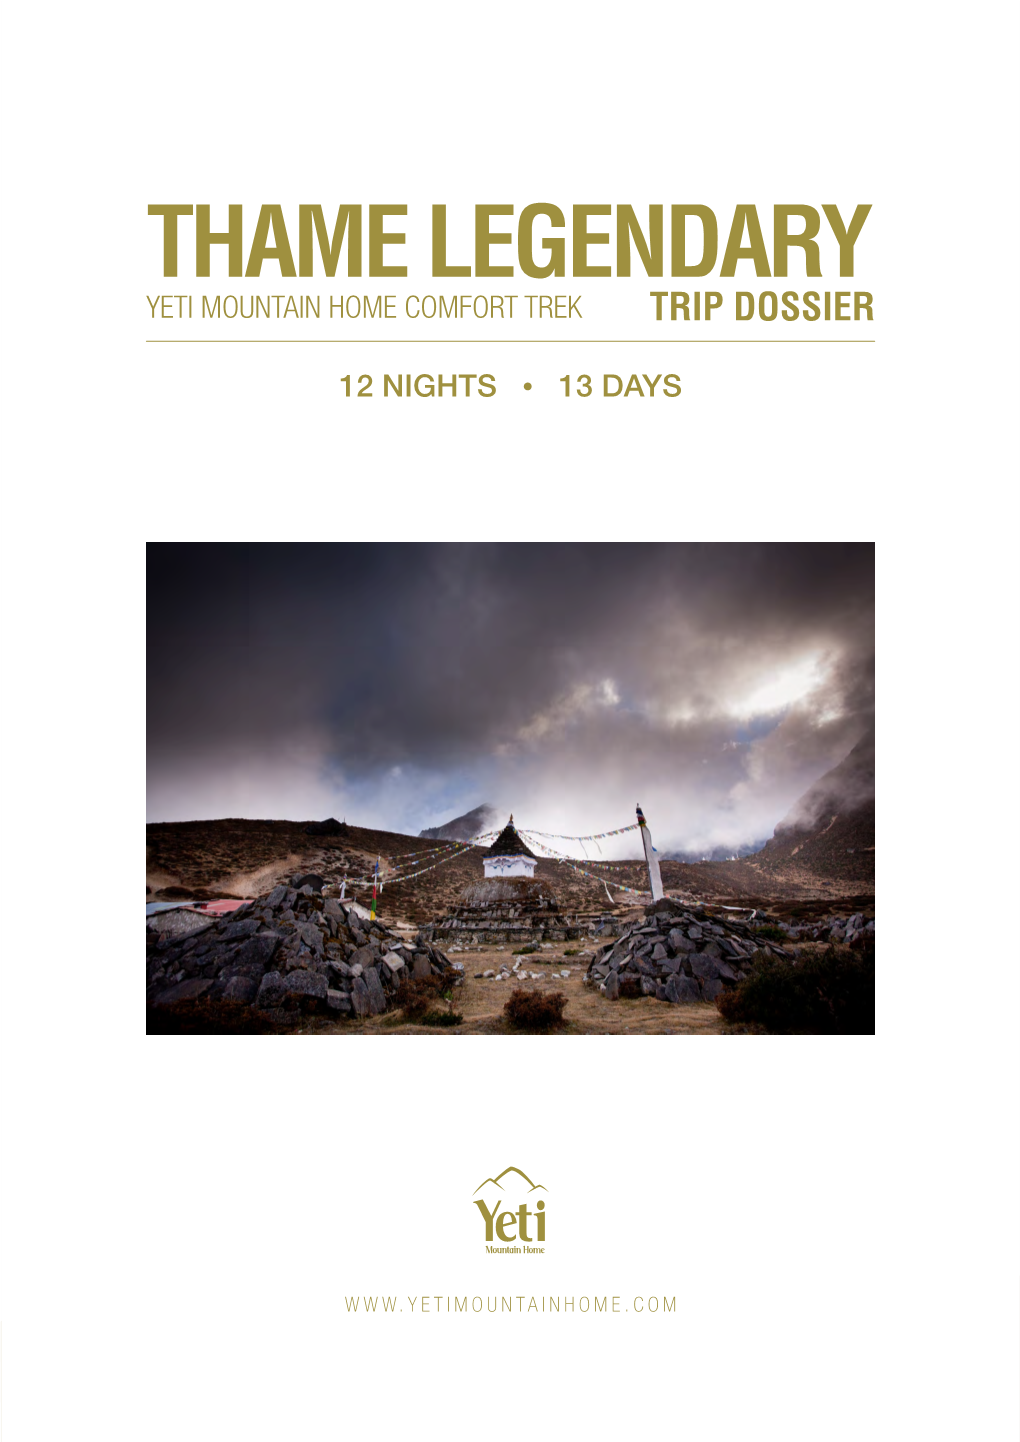 Thame Legendary | 1 Thame Legendary Yeti Mountain Home Comfort Trek Trip Dossier